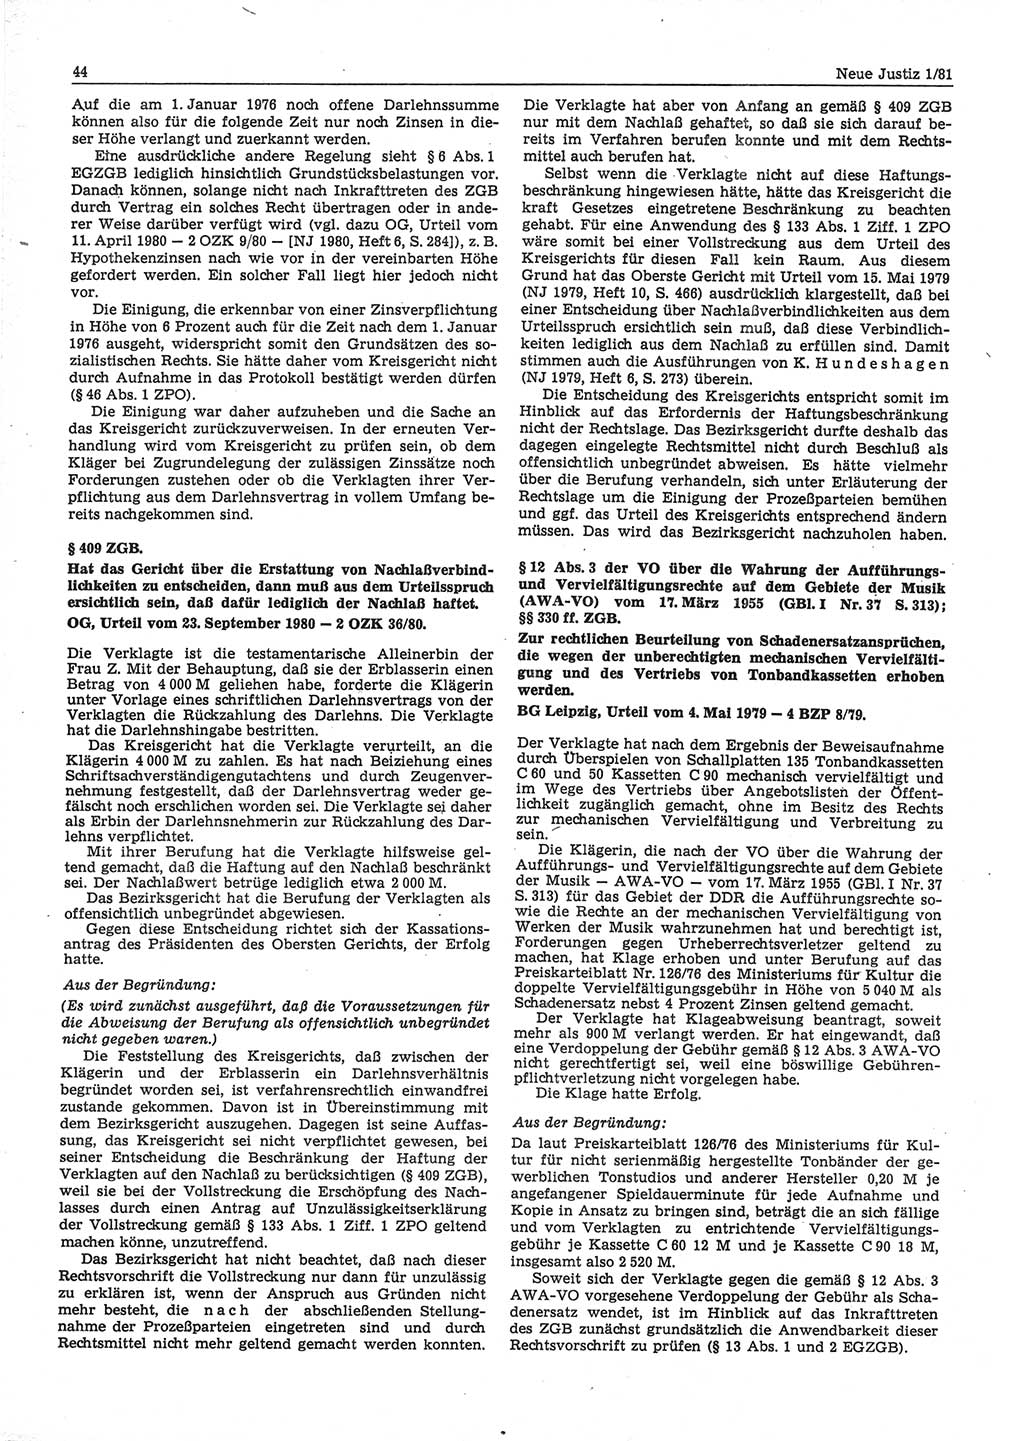 Neue Justiz (NJ), Zeitschrift für sozialistisches Recht und Gesetzlichkeit [Deutsche Demokratische Republik (DDR)], 35. Jahrgang 1981, Seite 44 (NJ DDR 1981, S. 44)